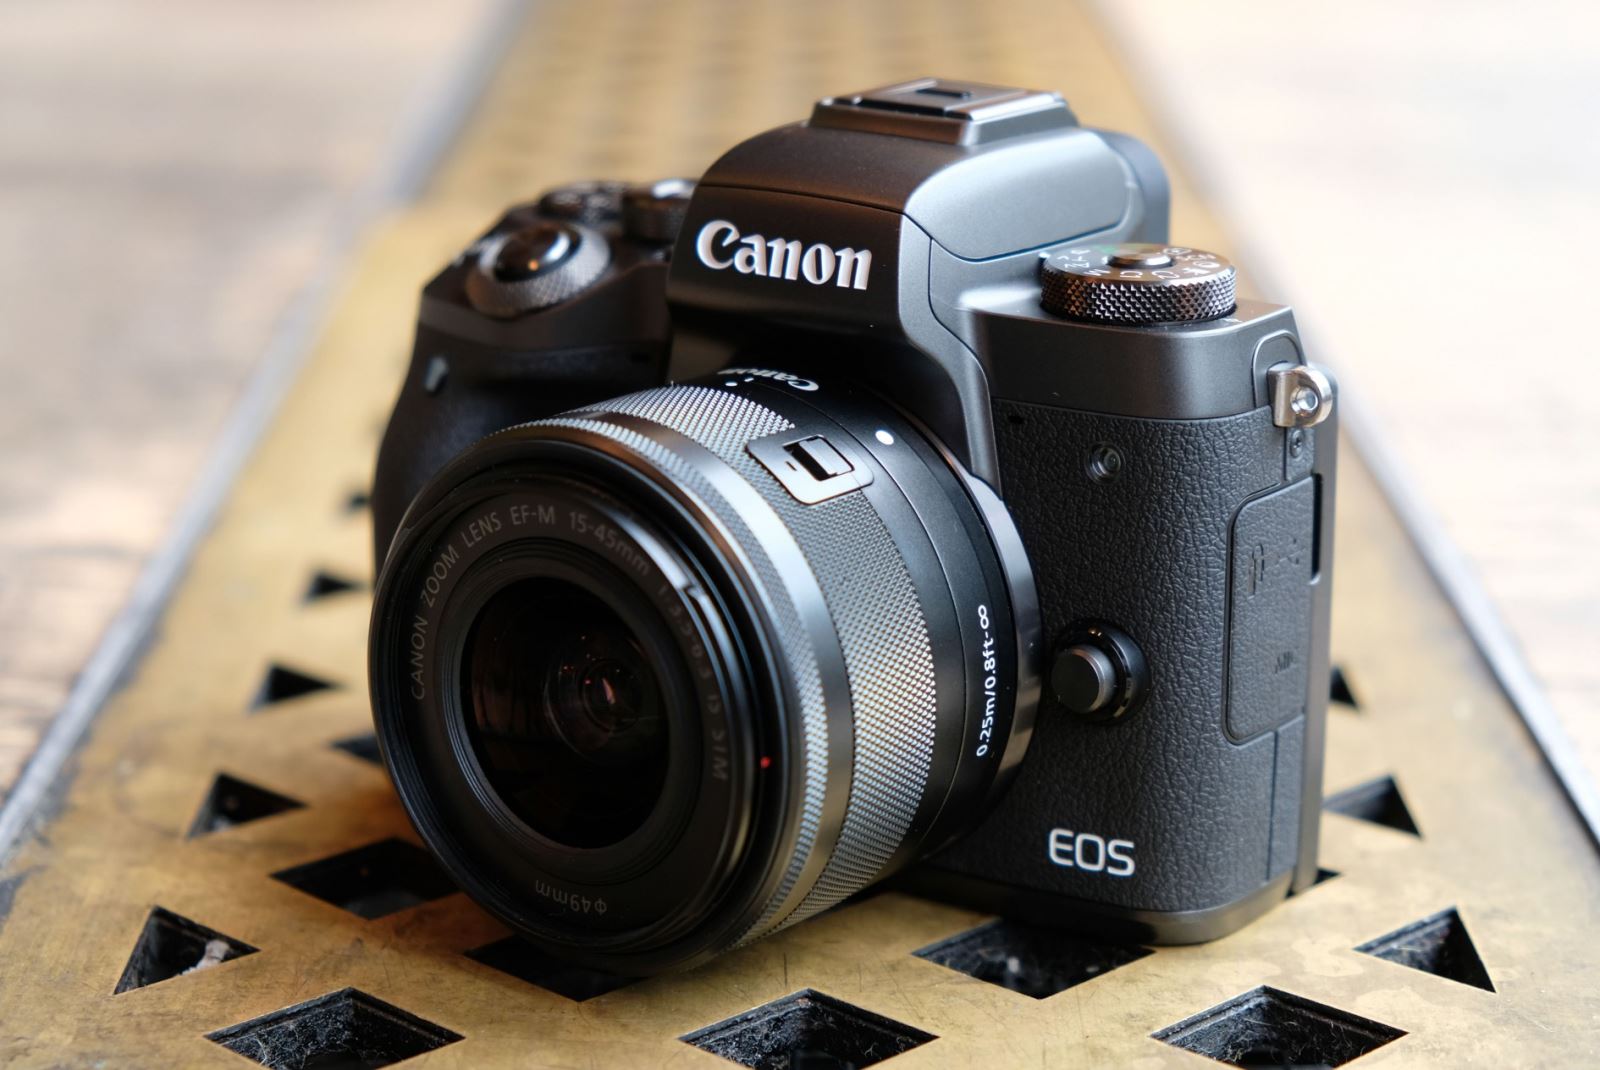 Rò rỉ thông số kỹ thuật của máy ảnh Canon EOS M7